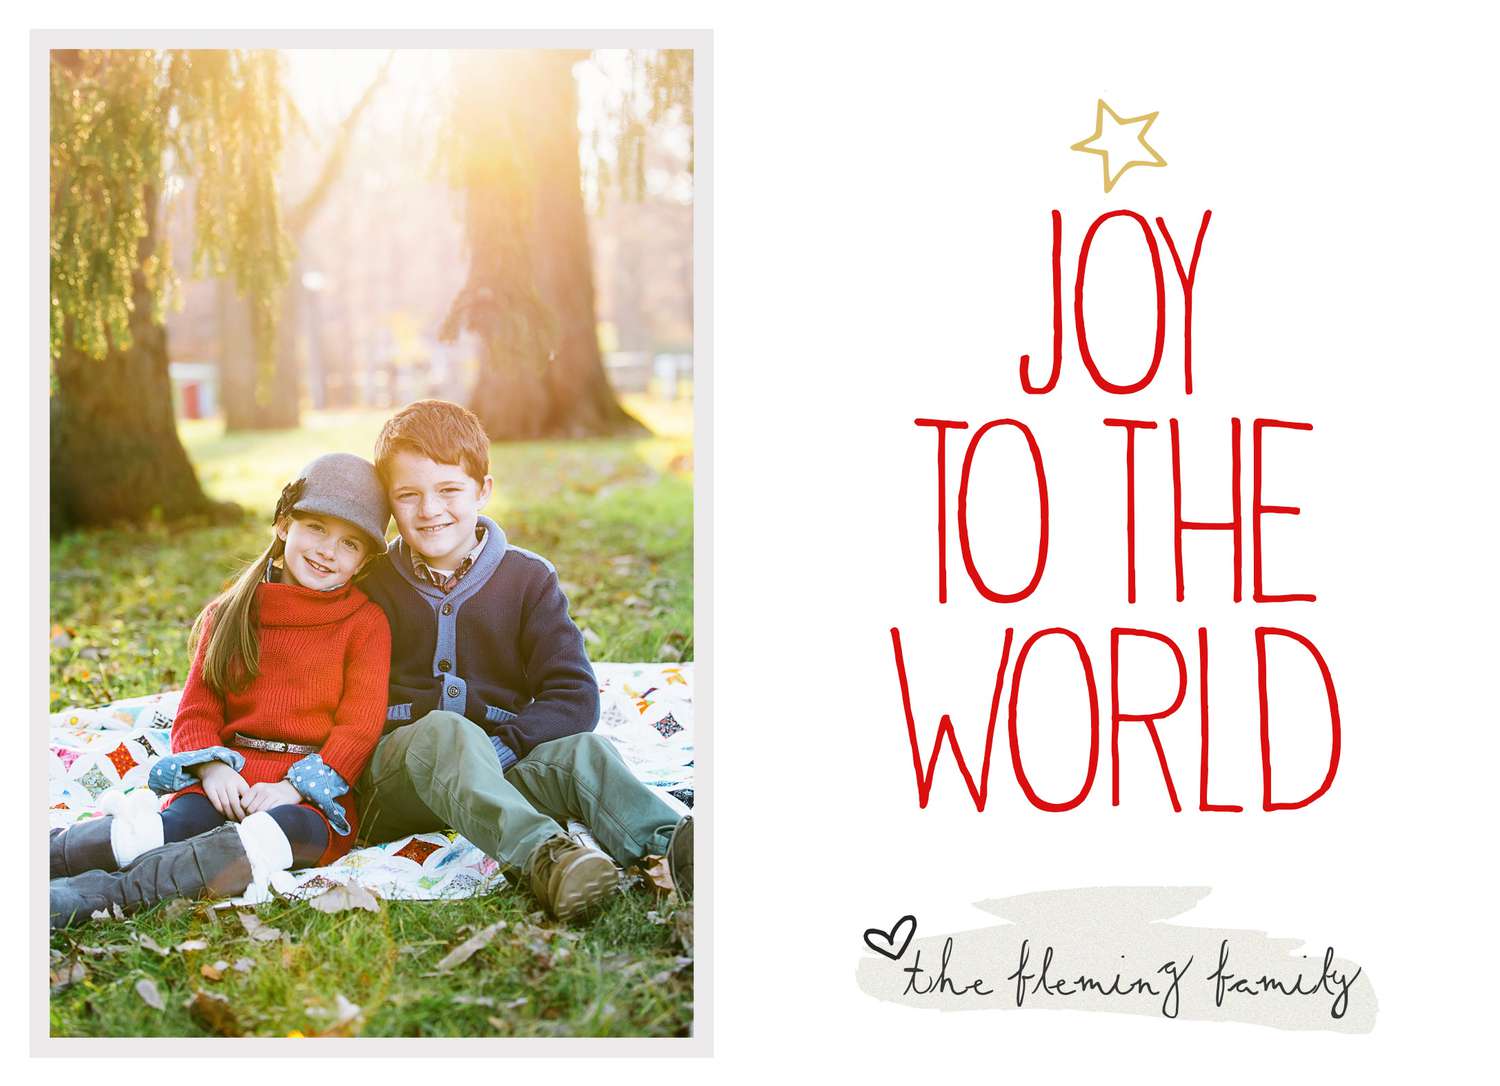 一个“快乐世界”的圣诞卡片模板。